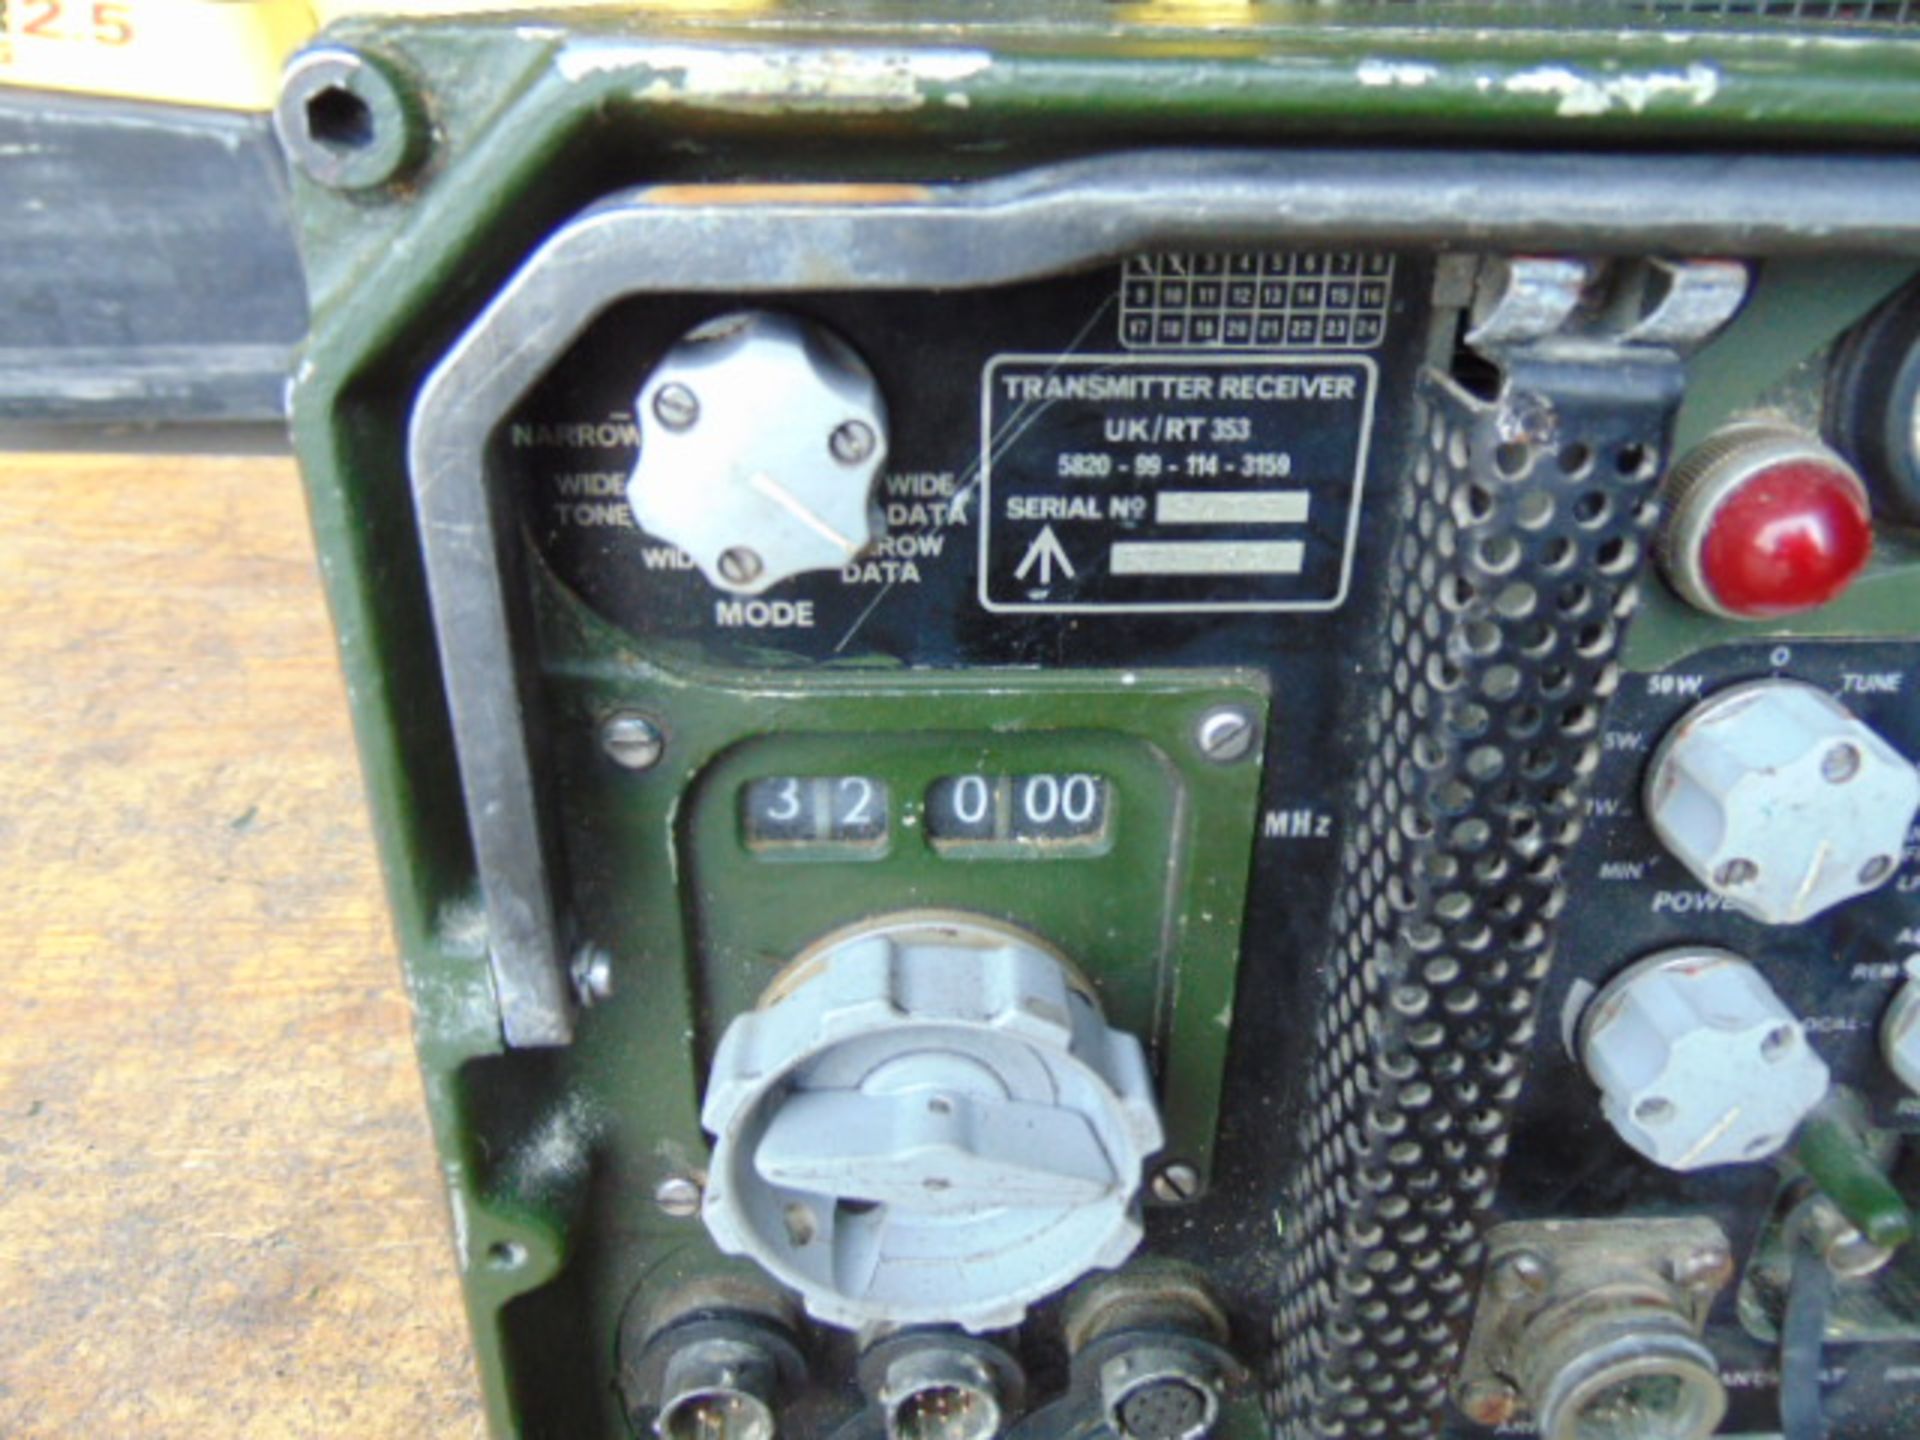 Clansman Transmitter Receiver UK/RT 353 - Image 3 of 6